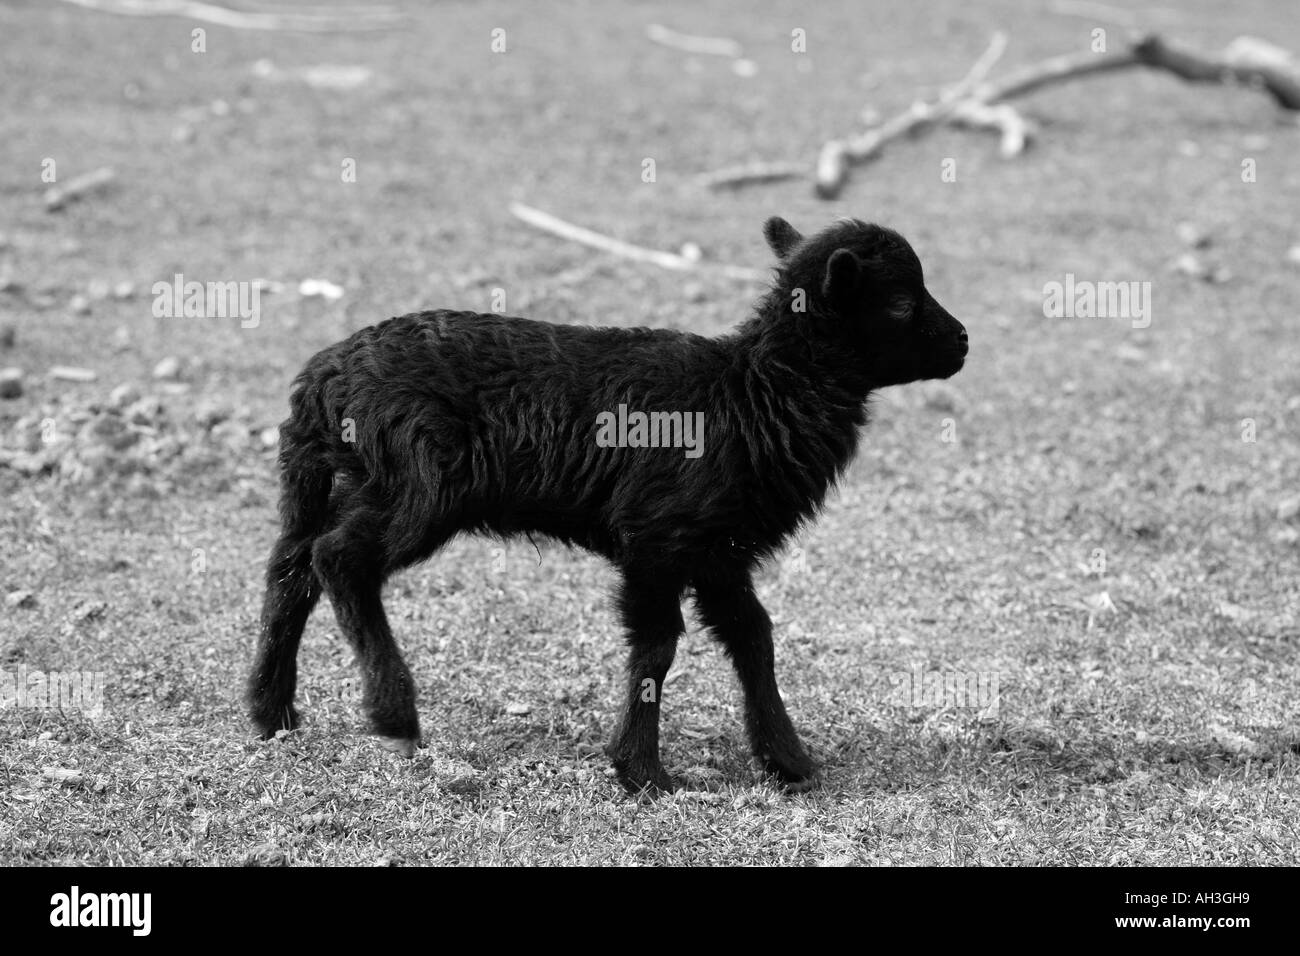 Photographie en noir et blanc de jeunes vulnérables nouvellement né agneau noir au printemps les champs à l'extérieur de la ferme Banque D'Images